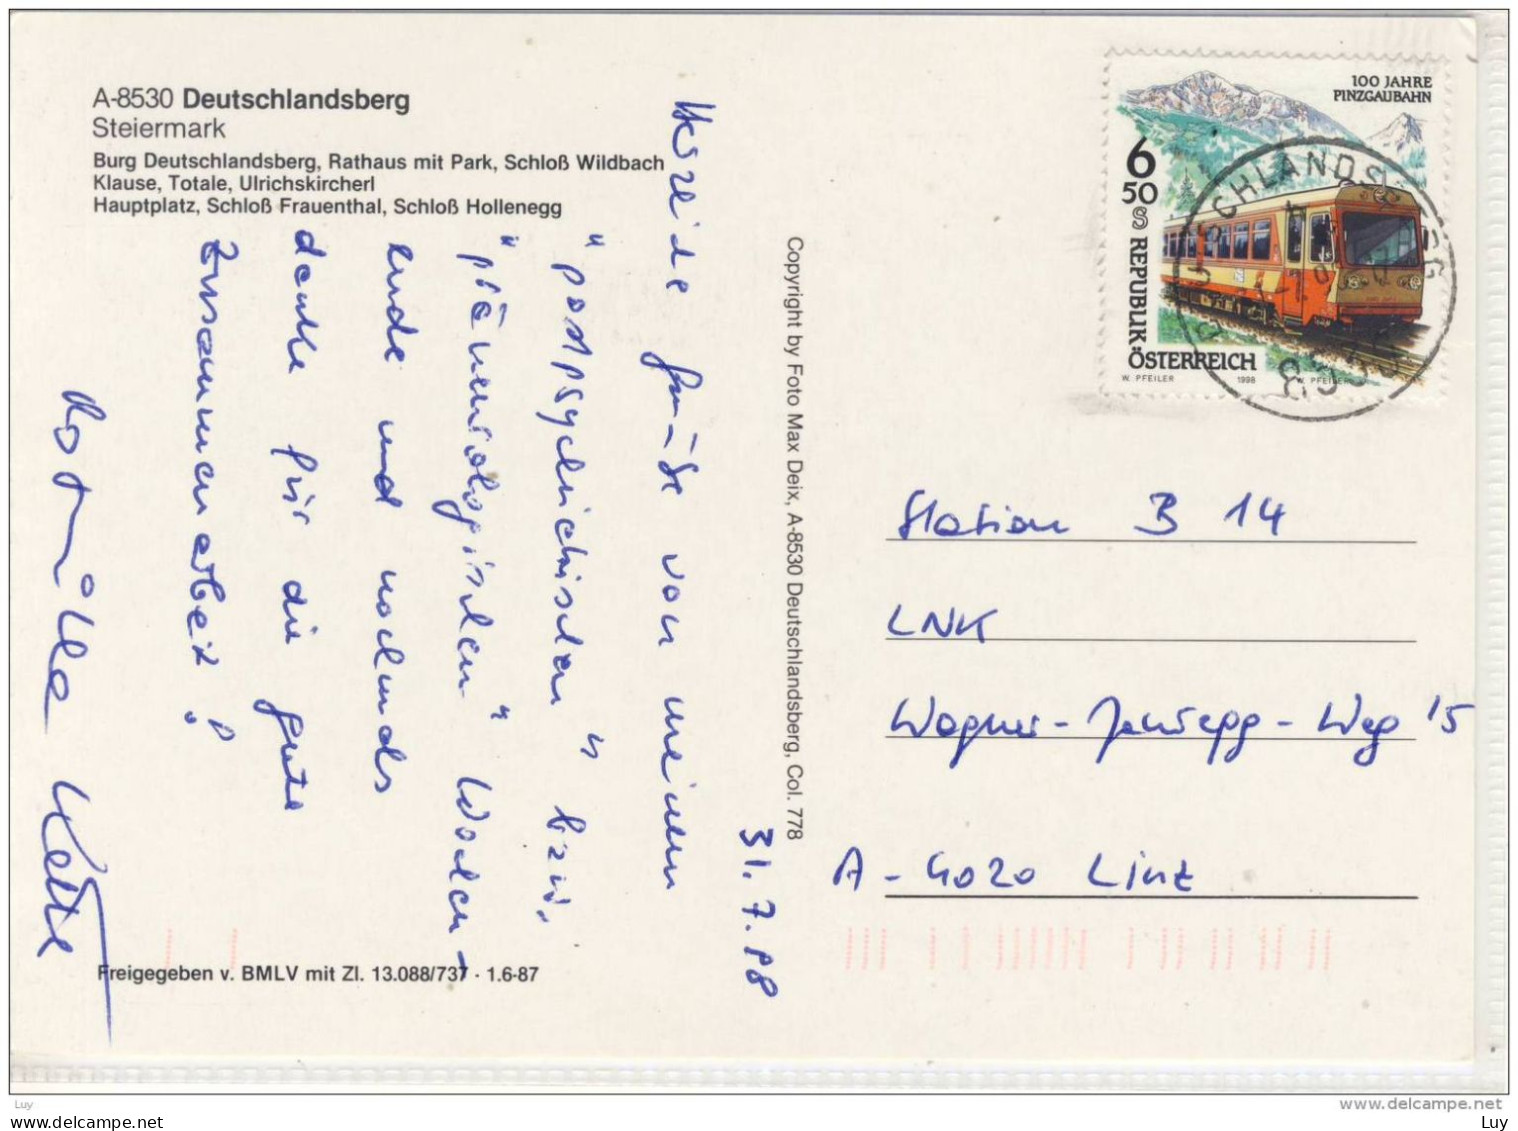 DEUTSCHLANDSBERG - Panorama Flugaufnahme, Mehrbildkarte, Sondermarke, Nice Stamp - Deutschlandsberg